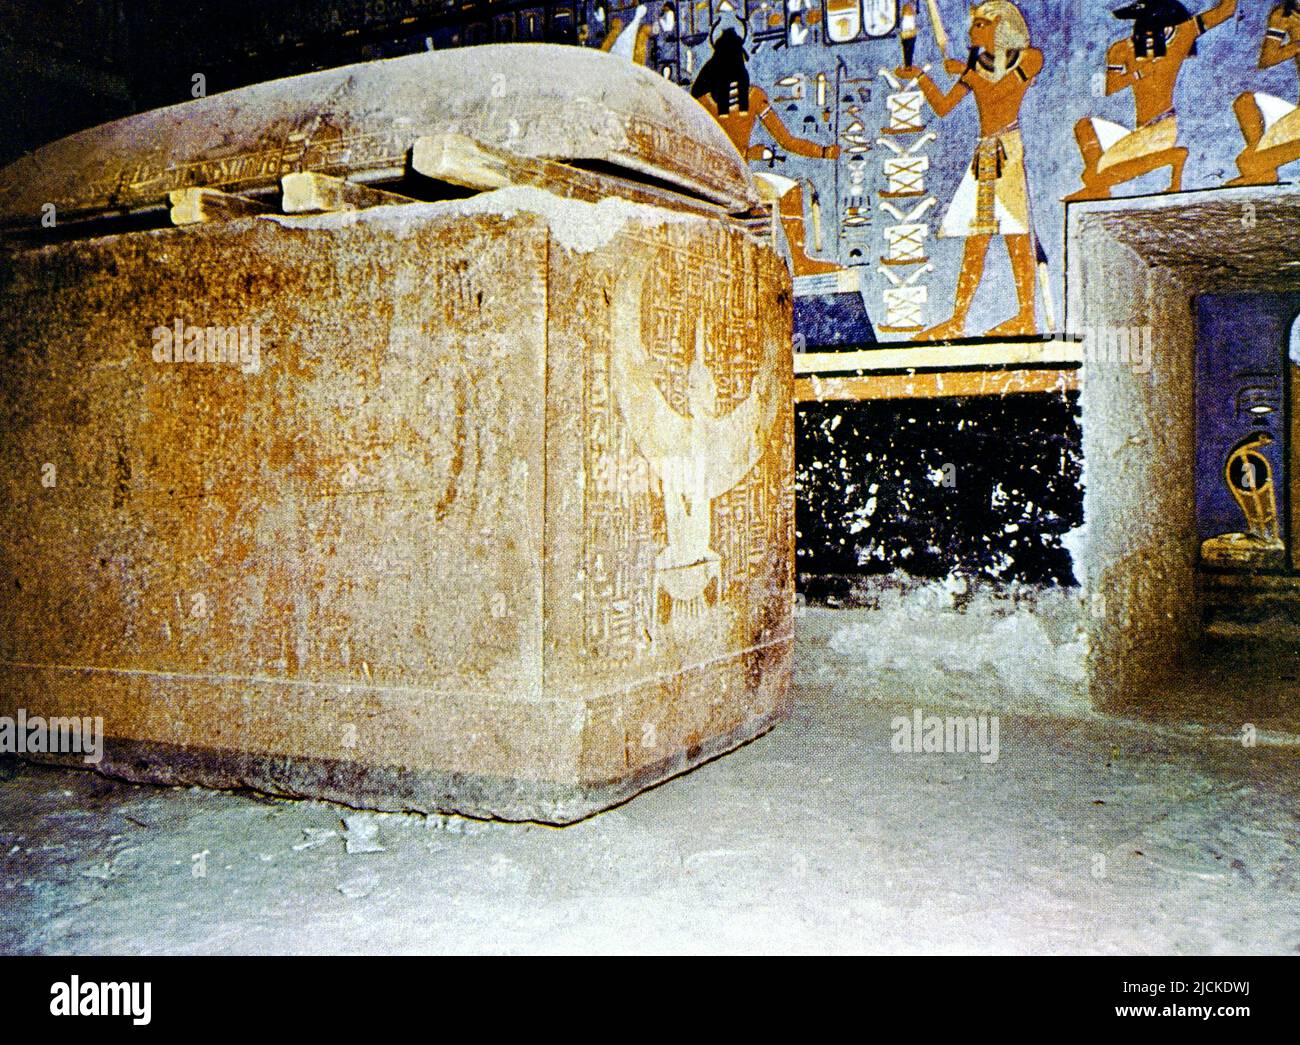 Luxor Egitto Valle dei Re Rameses i sarcofago fatto di Quartzite Rossa in Tomba decorata con scene dal Libro dei morti Foto Stock